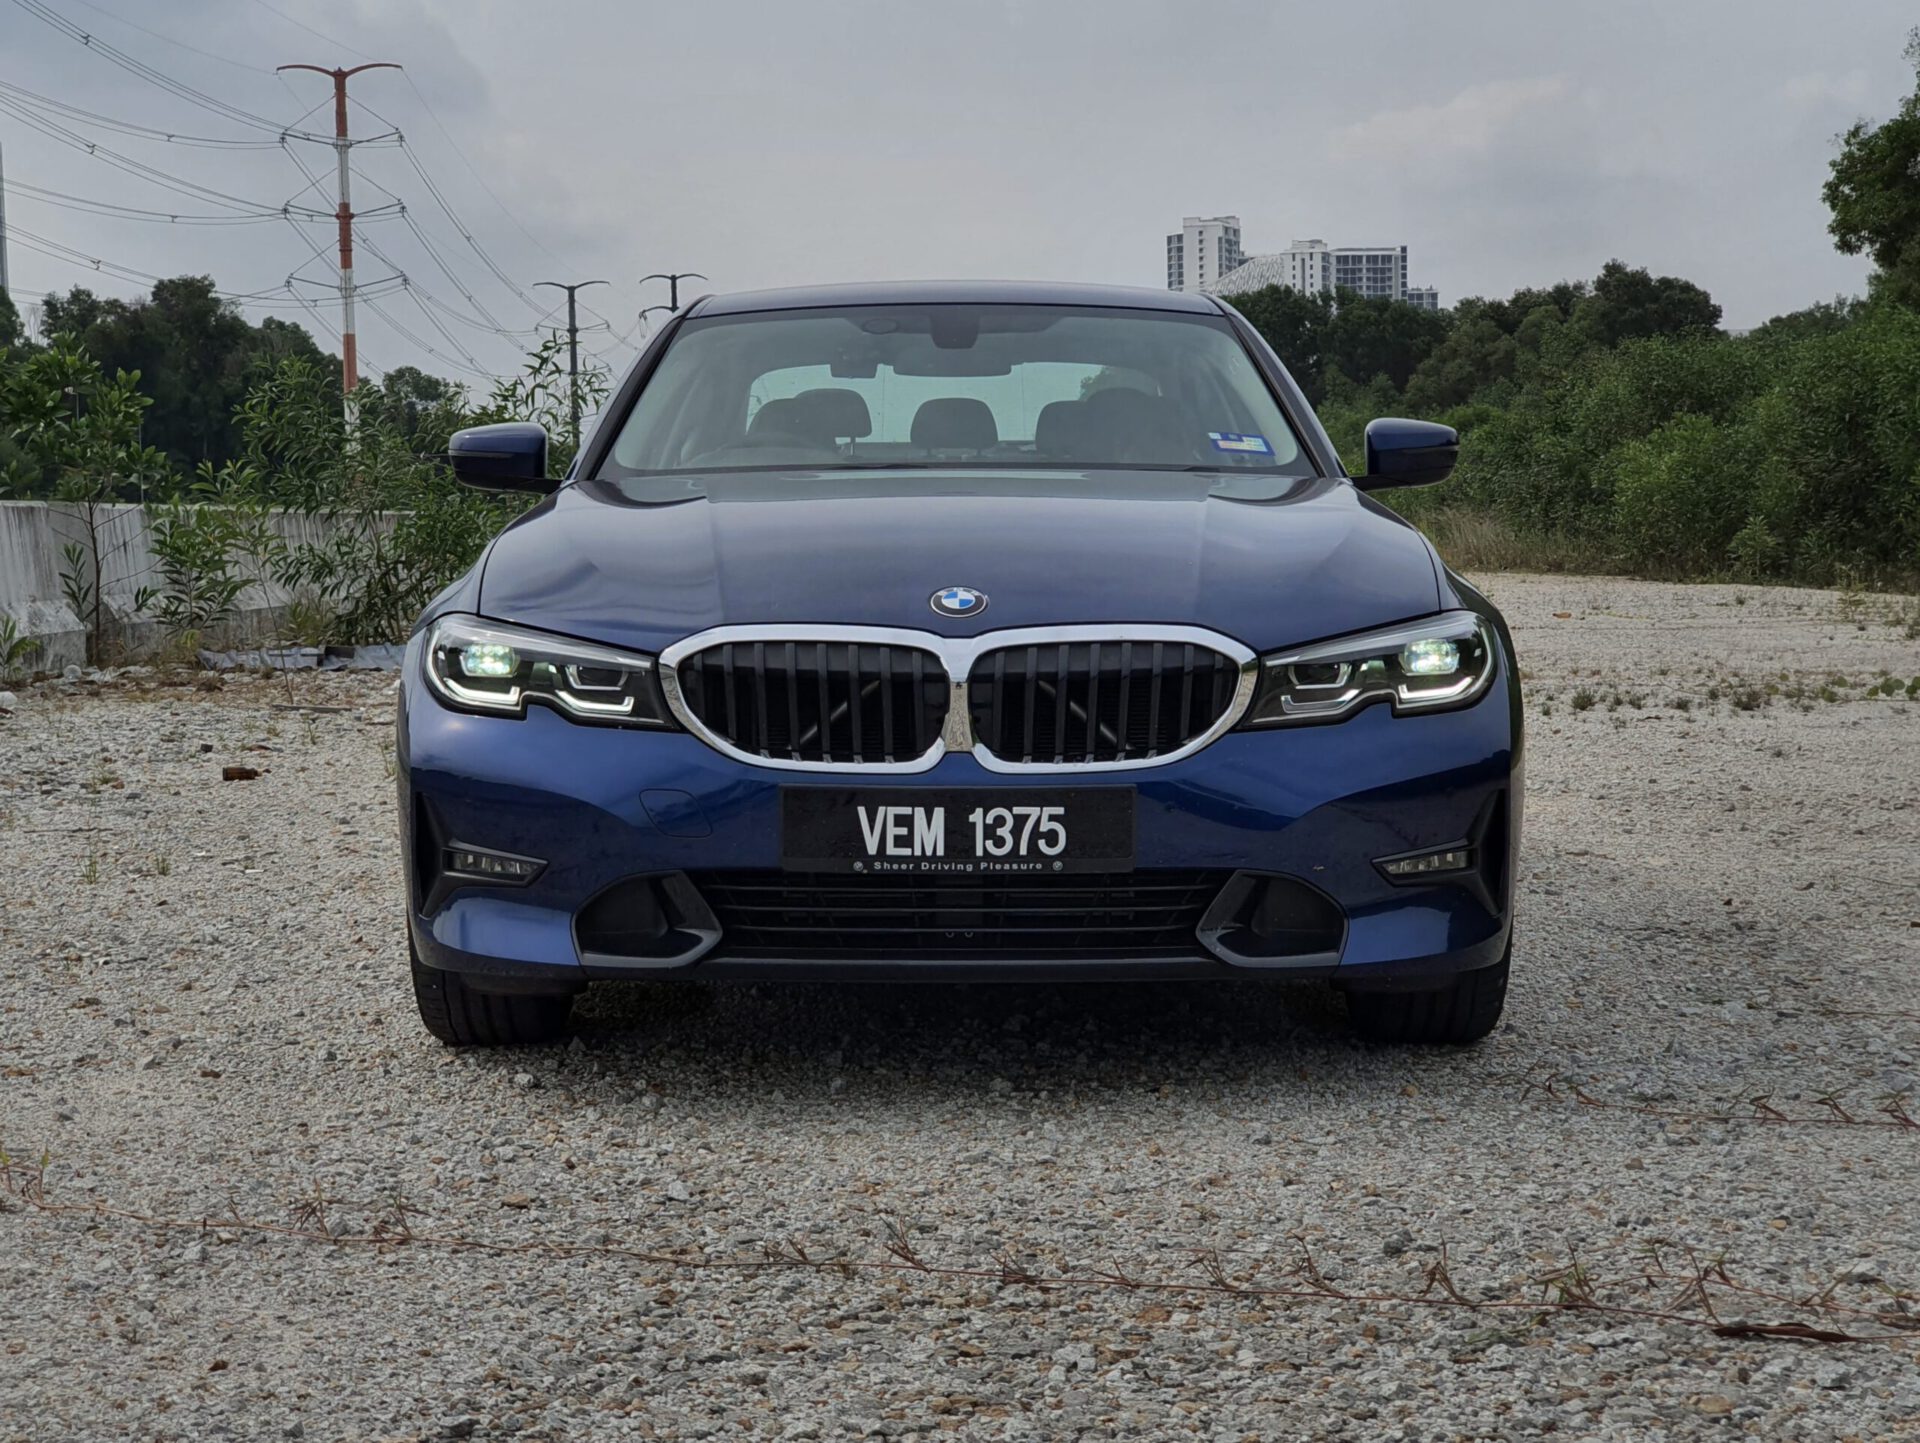 Review 2020 BMW 320i Sport (G20) 7.1 secs / 189hp / 2L